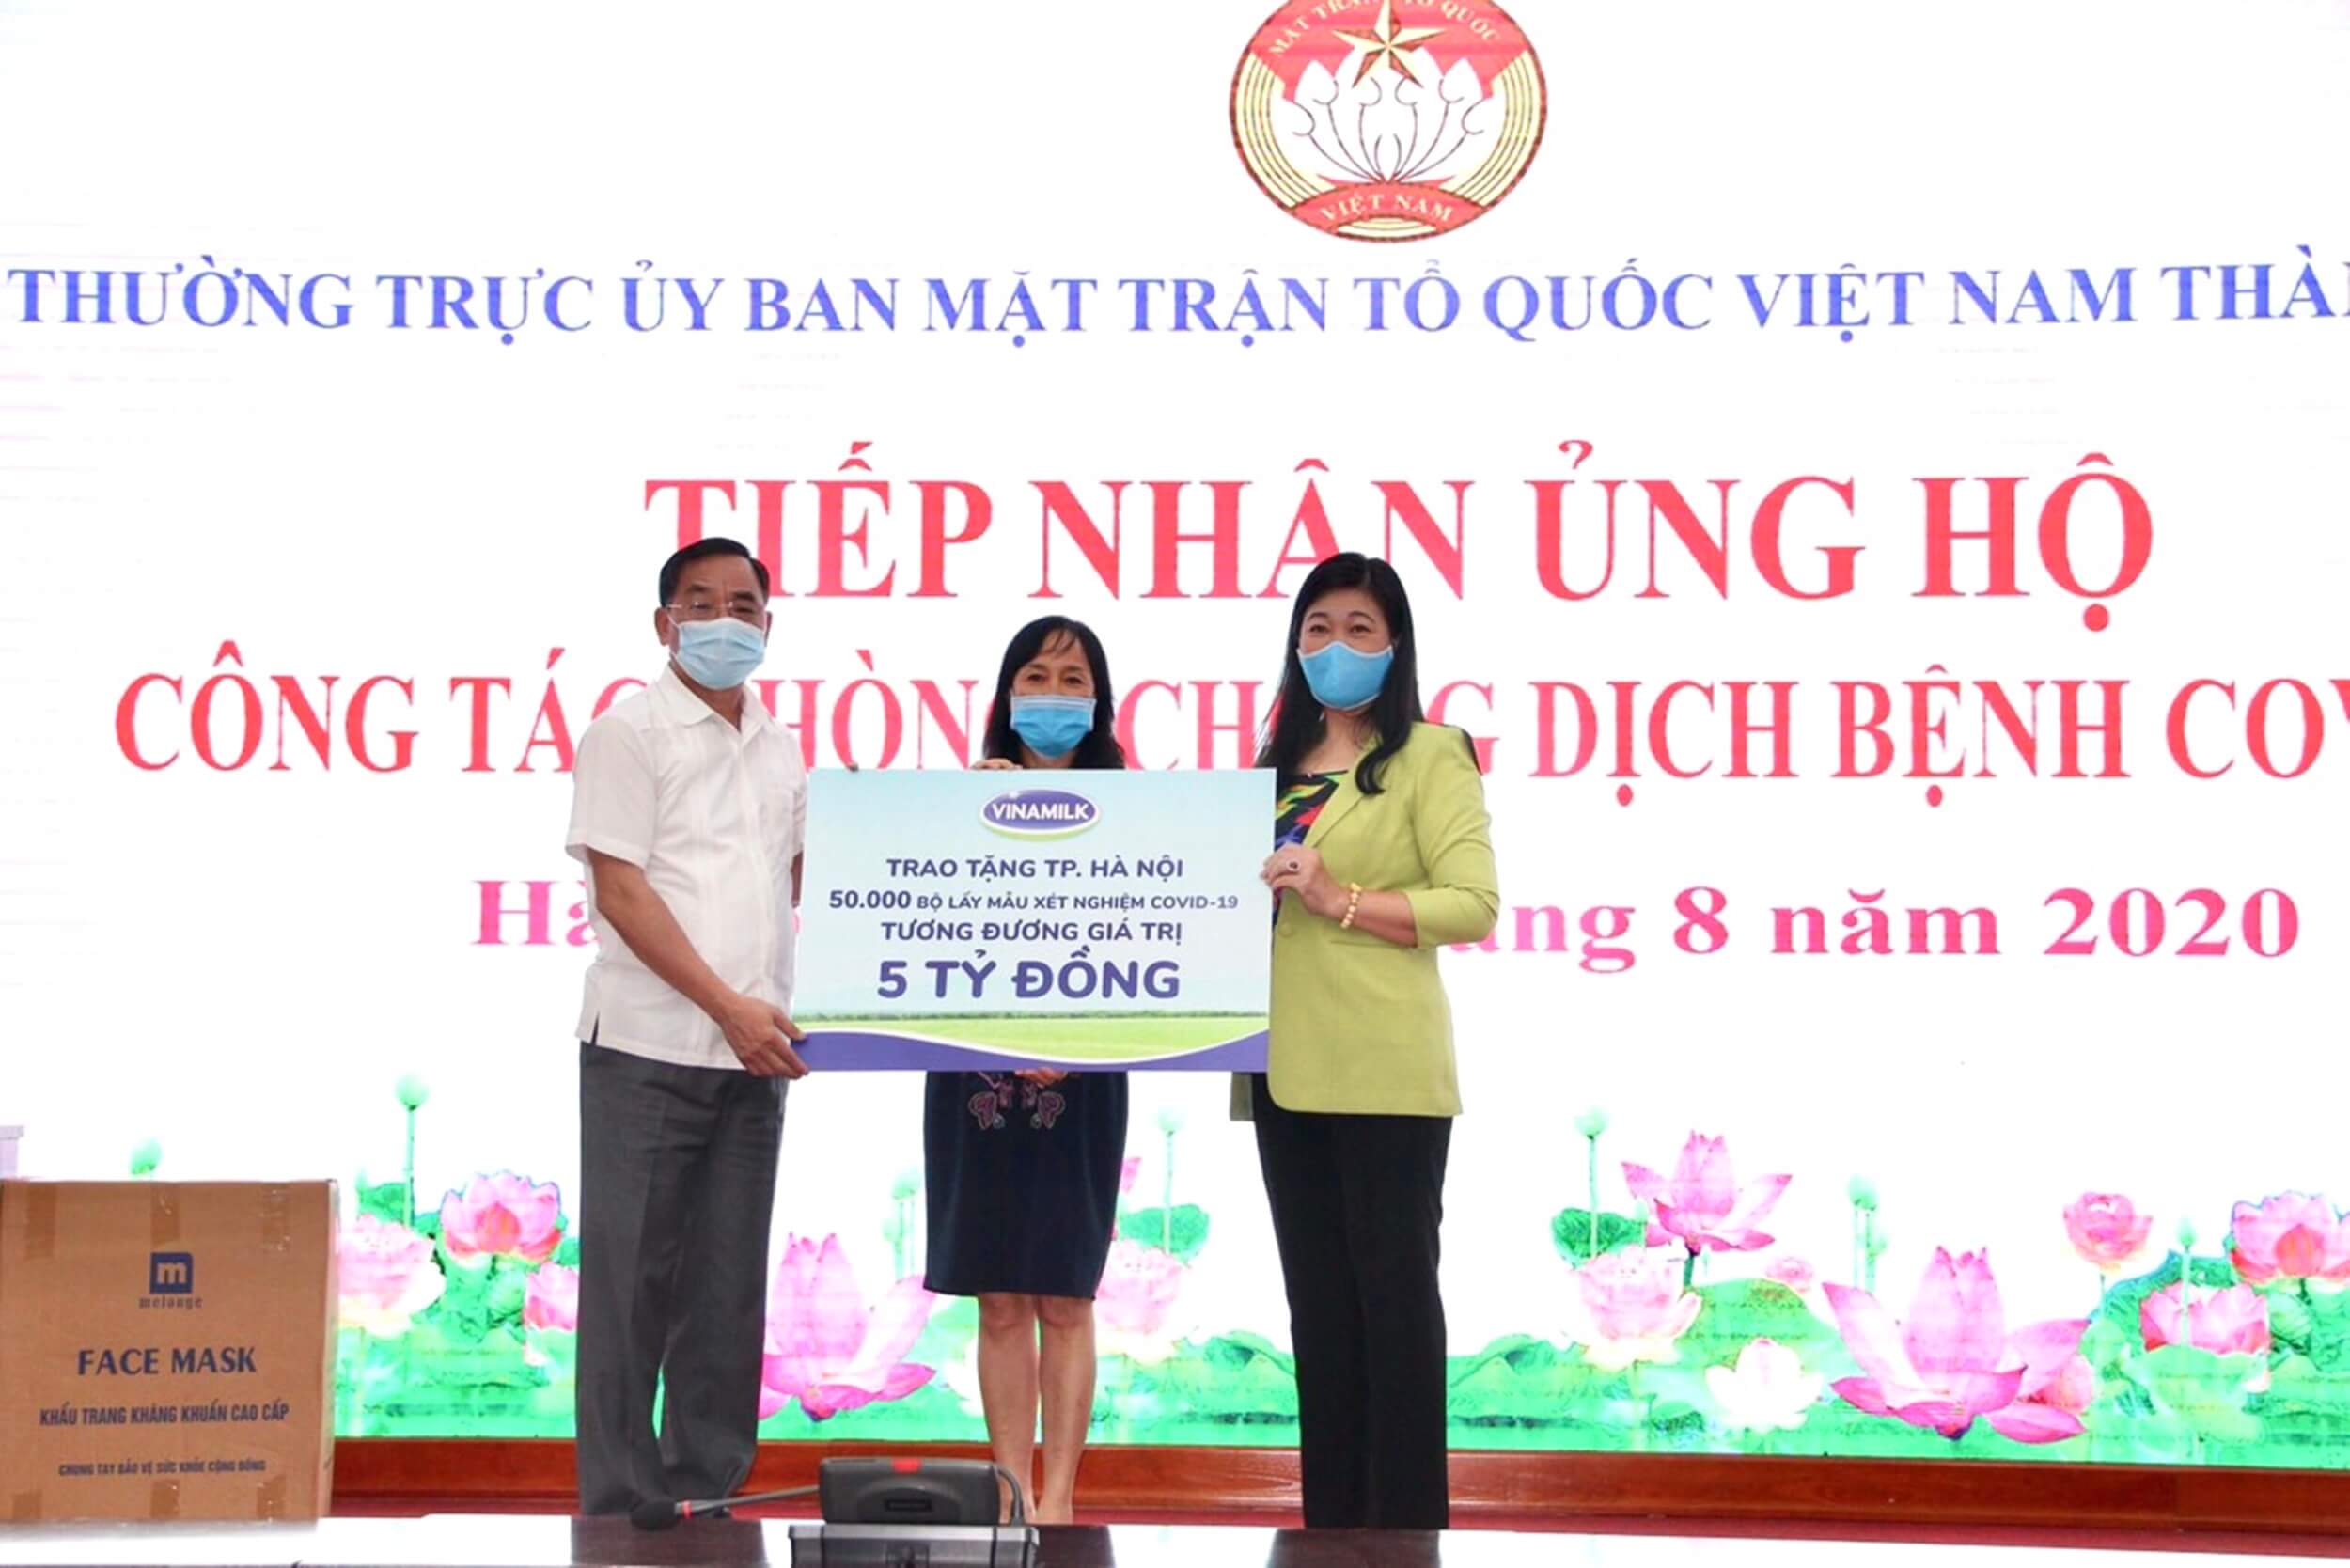 Vinamilk ủng hộ 8 tỷ đồng cho Hà Nội và 3 tỉnh miền Trung chiến đấu chống dịch COVID-19